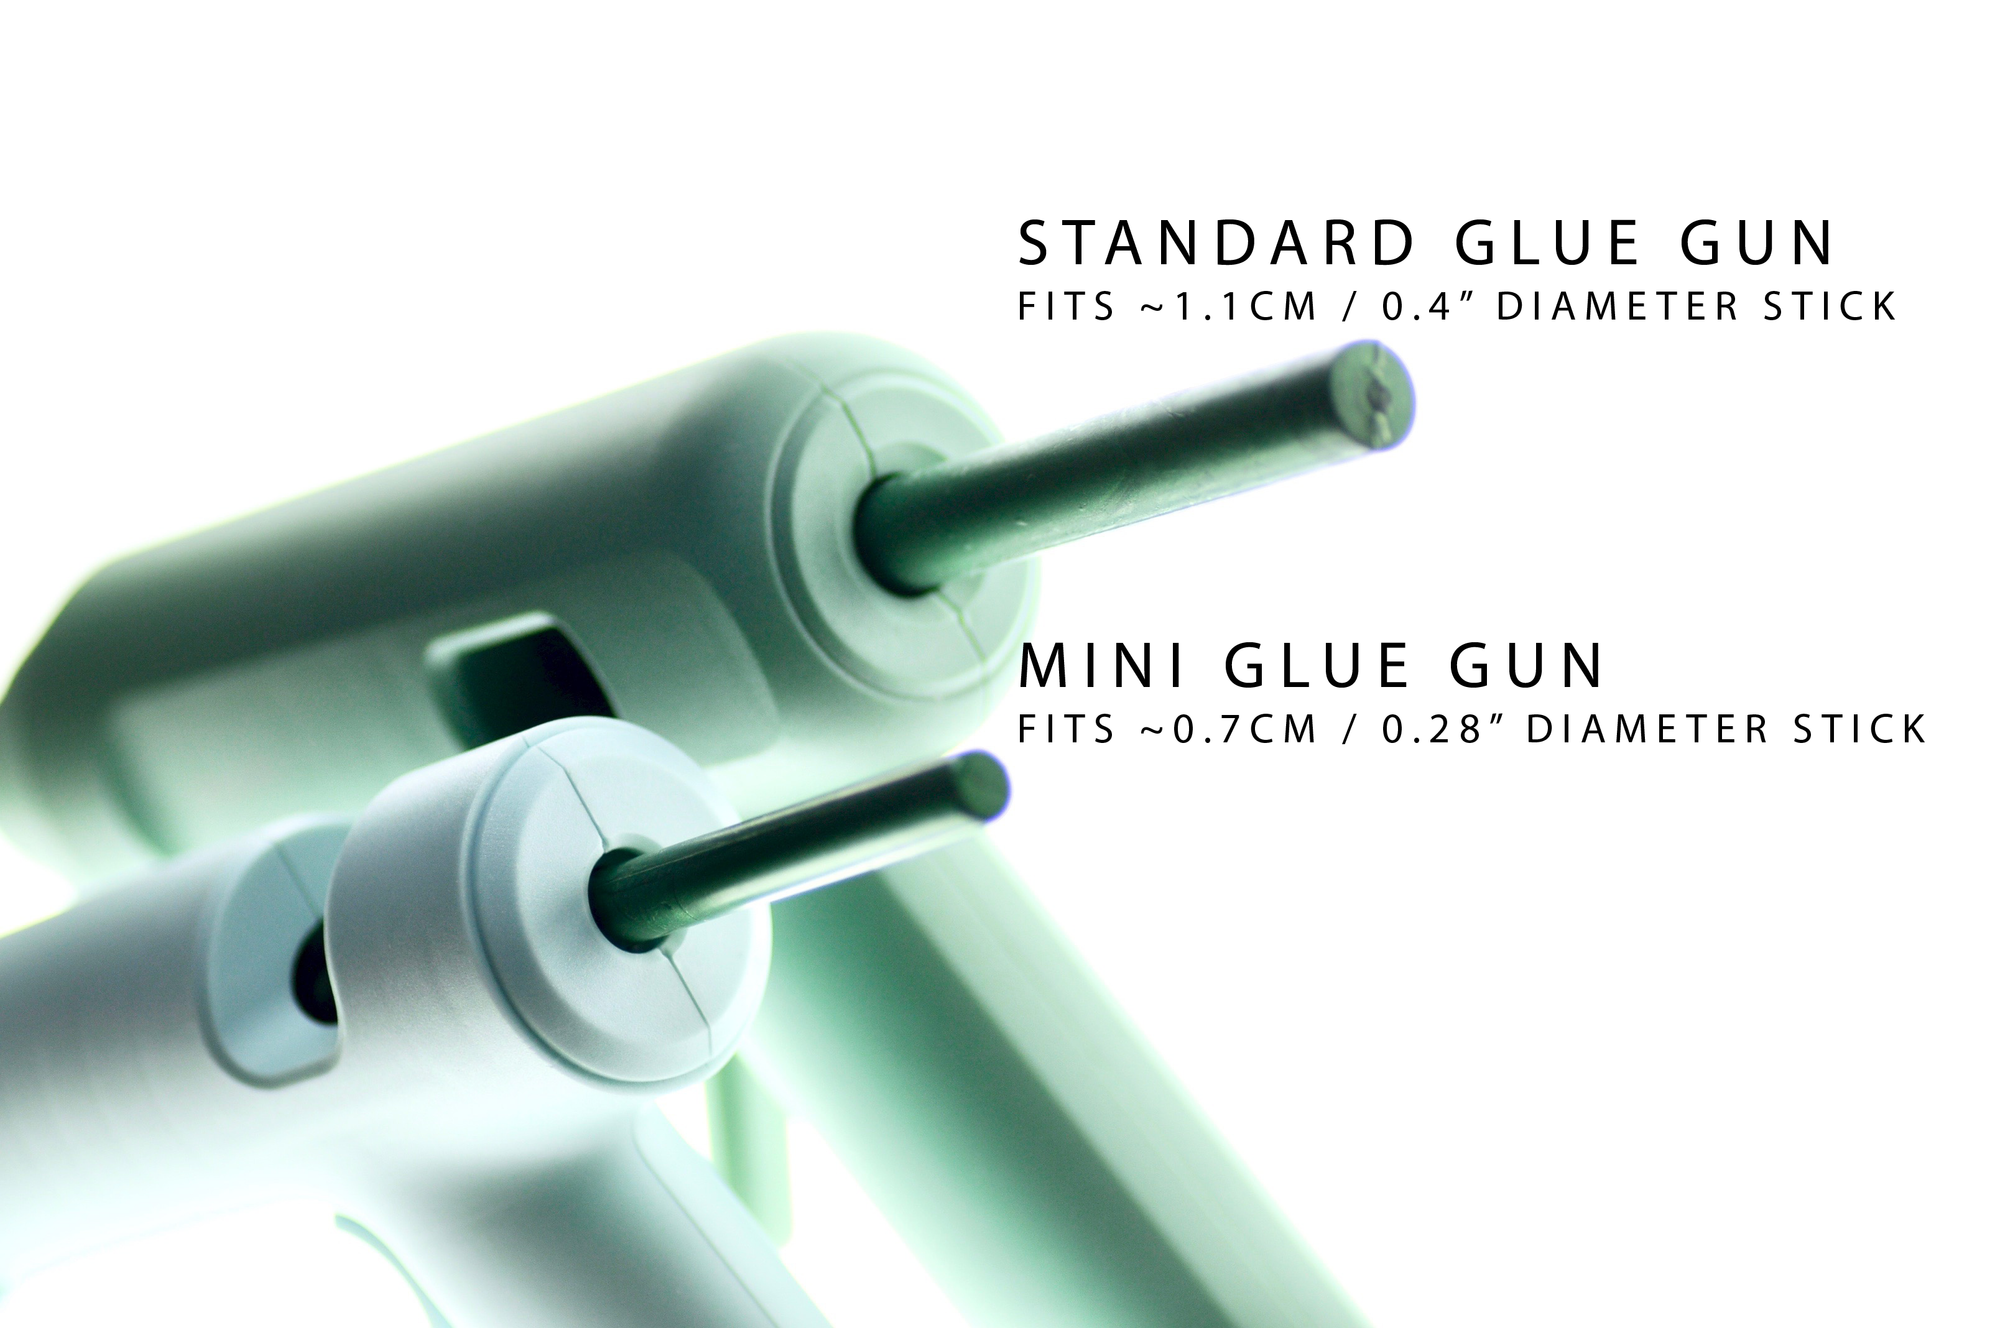 Standard Glue Gun Sealing Wax | Shades of Green